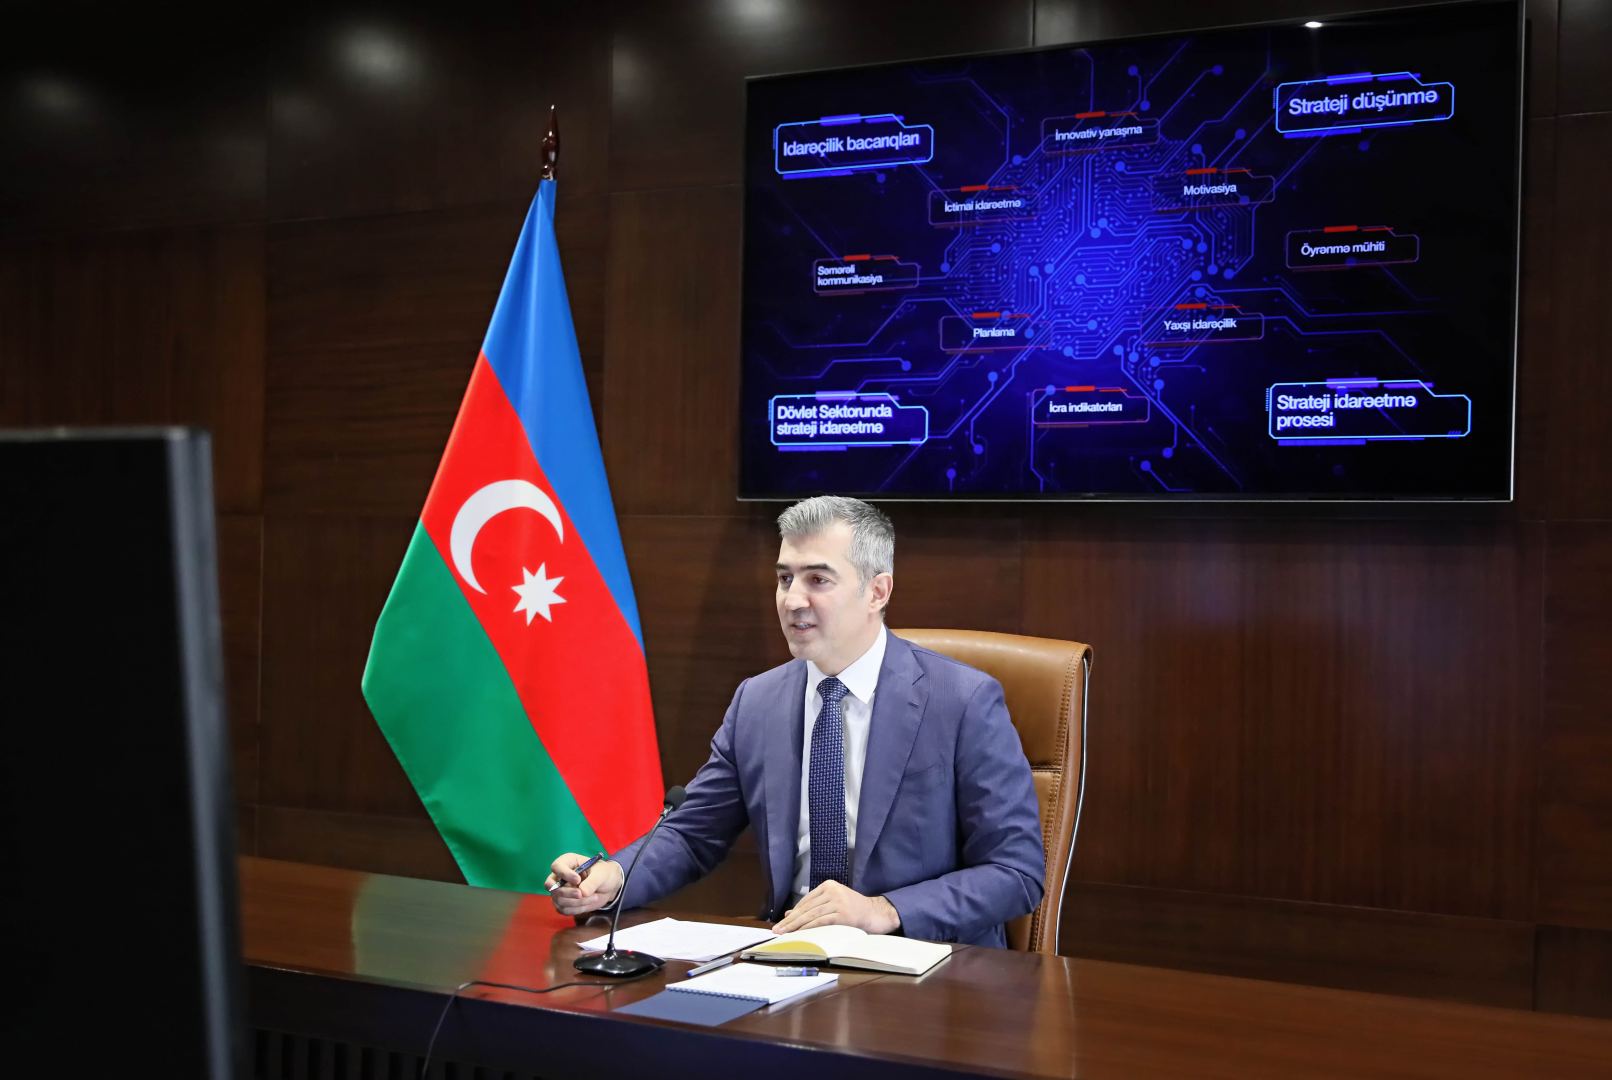 Начальник миграционной службы Азербайджана провел вебинар в рамках конкурса "Восхождение" (ФОТО)